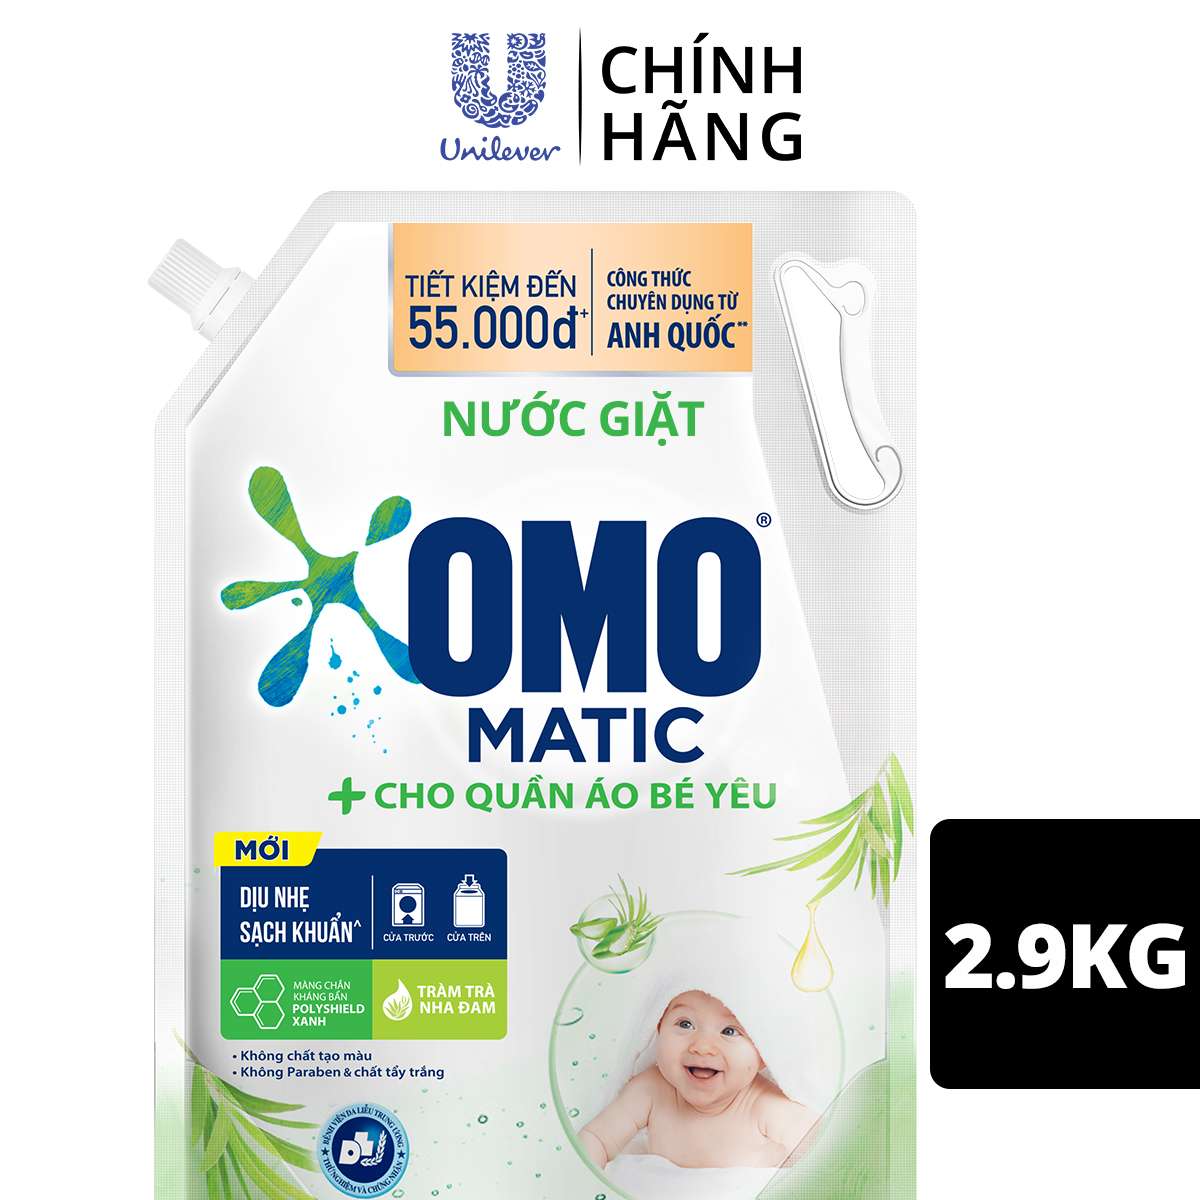 Nước giặt OMO Matic cho quần áo bé yêu, với công thức chuyên dụng cho bé đến từ Anh Quốc, chiết xuất tràm trà và nha đam, túi 2.9kg